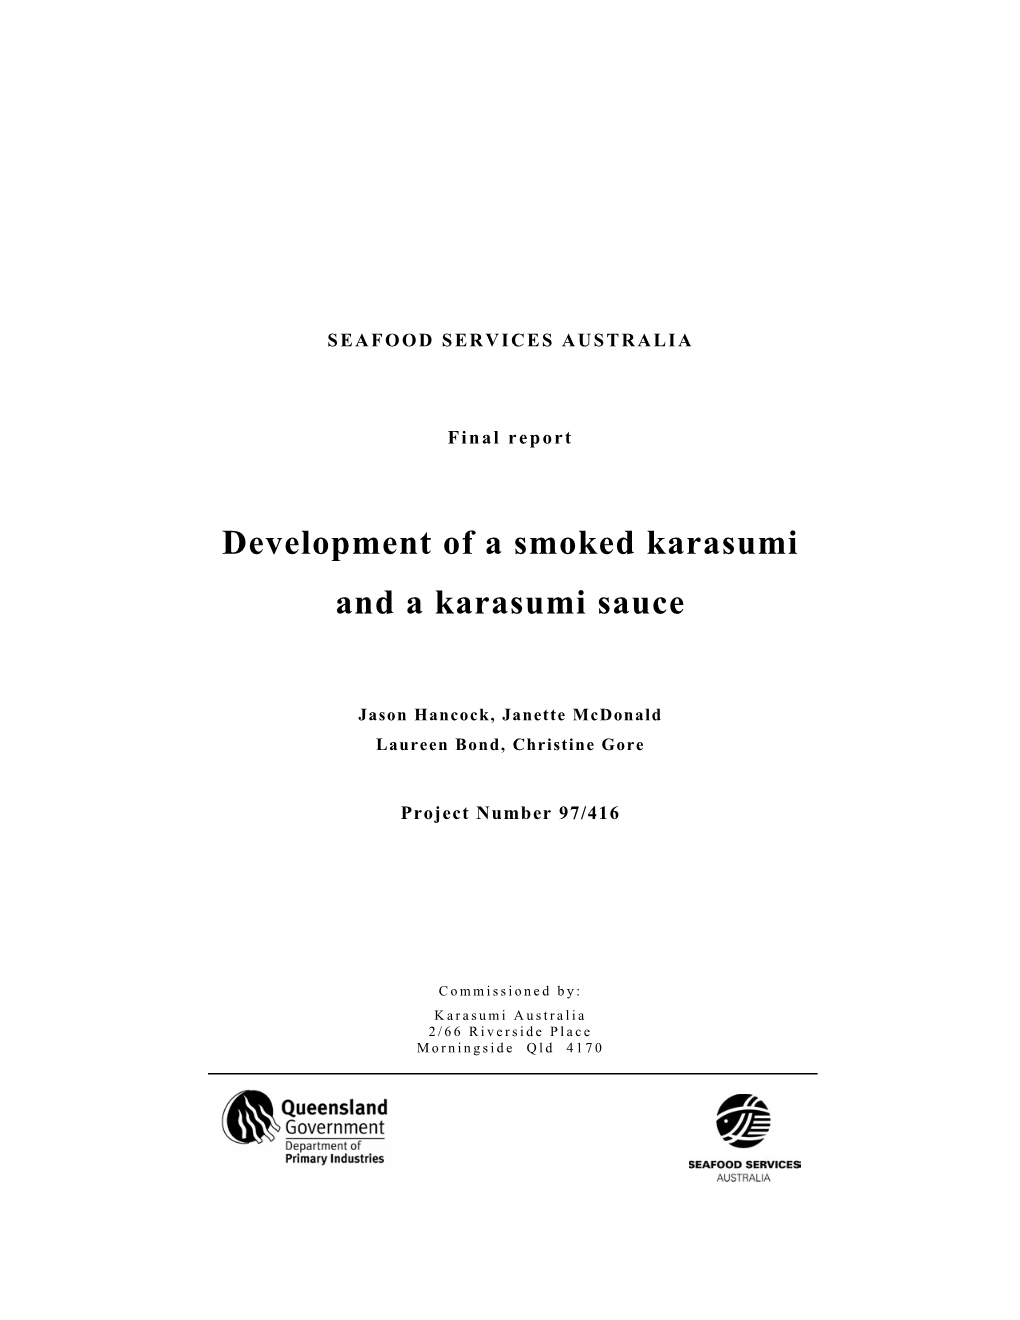 Development of a Smoked Karasumi and a Karasumi Sauce